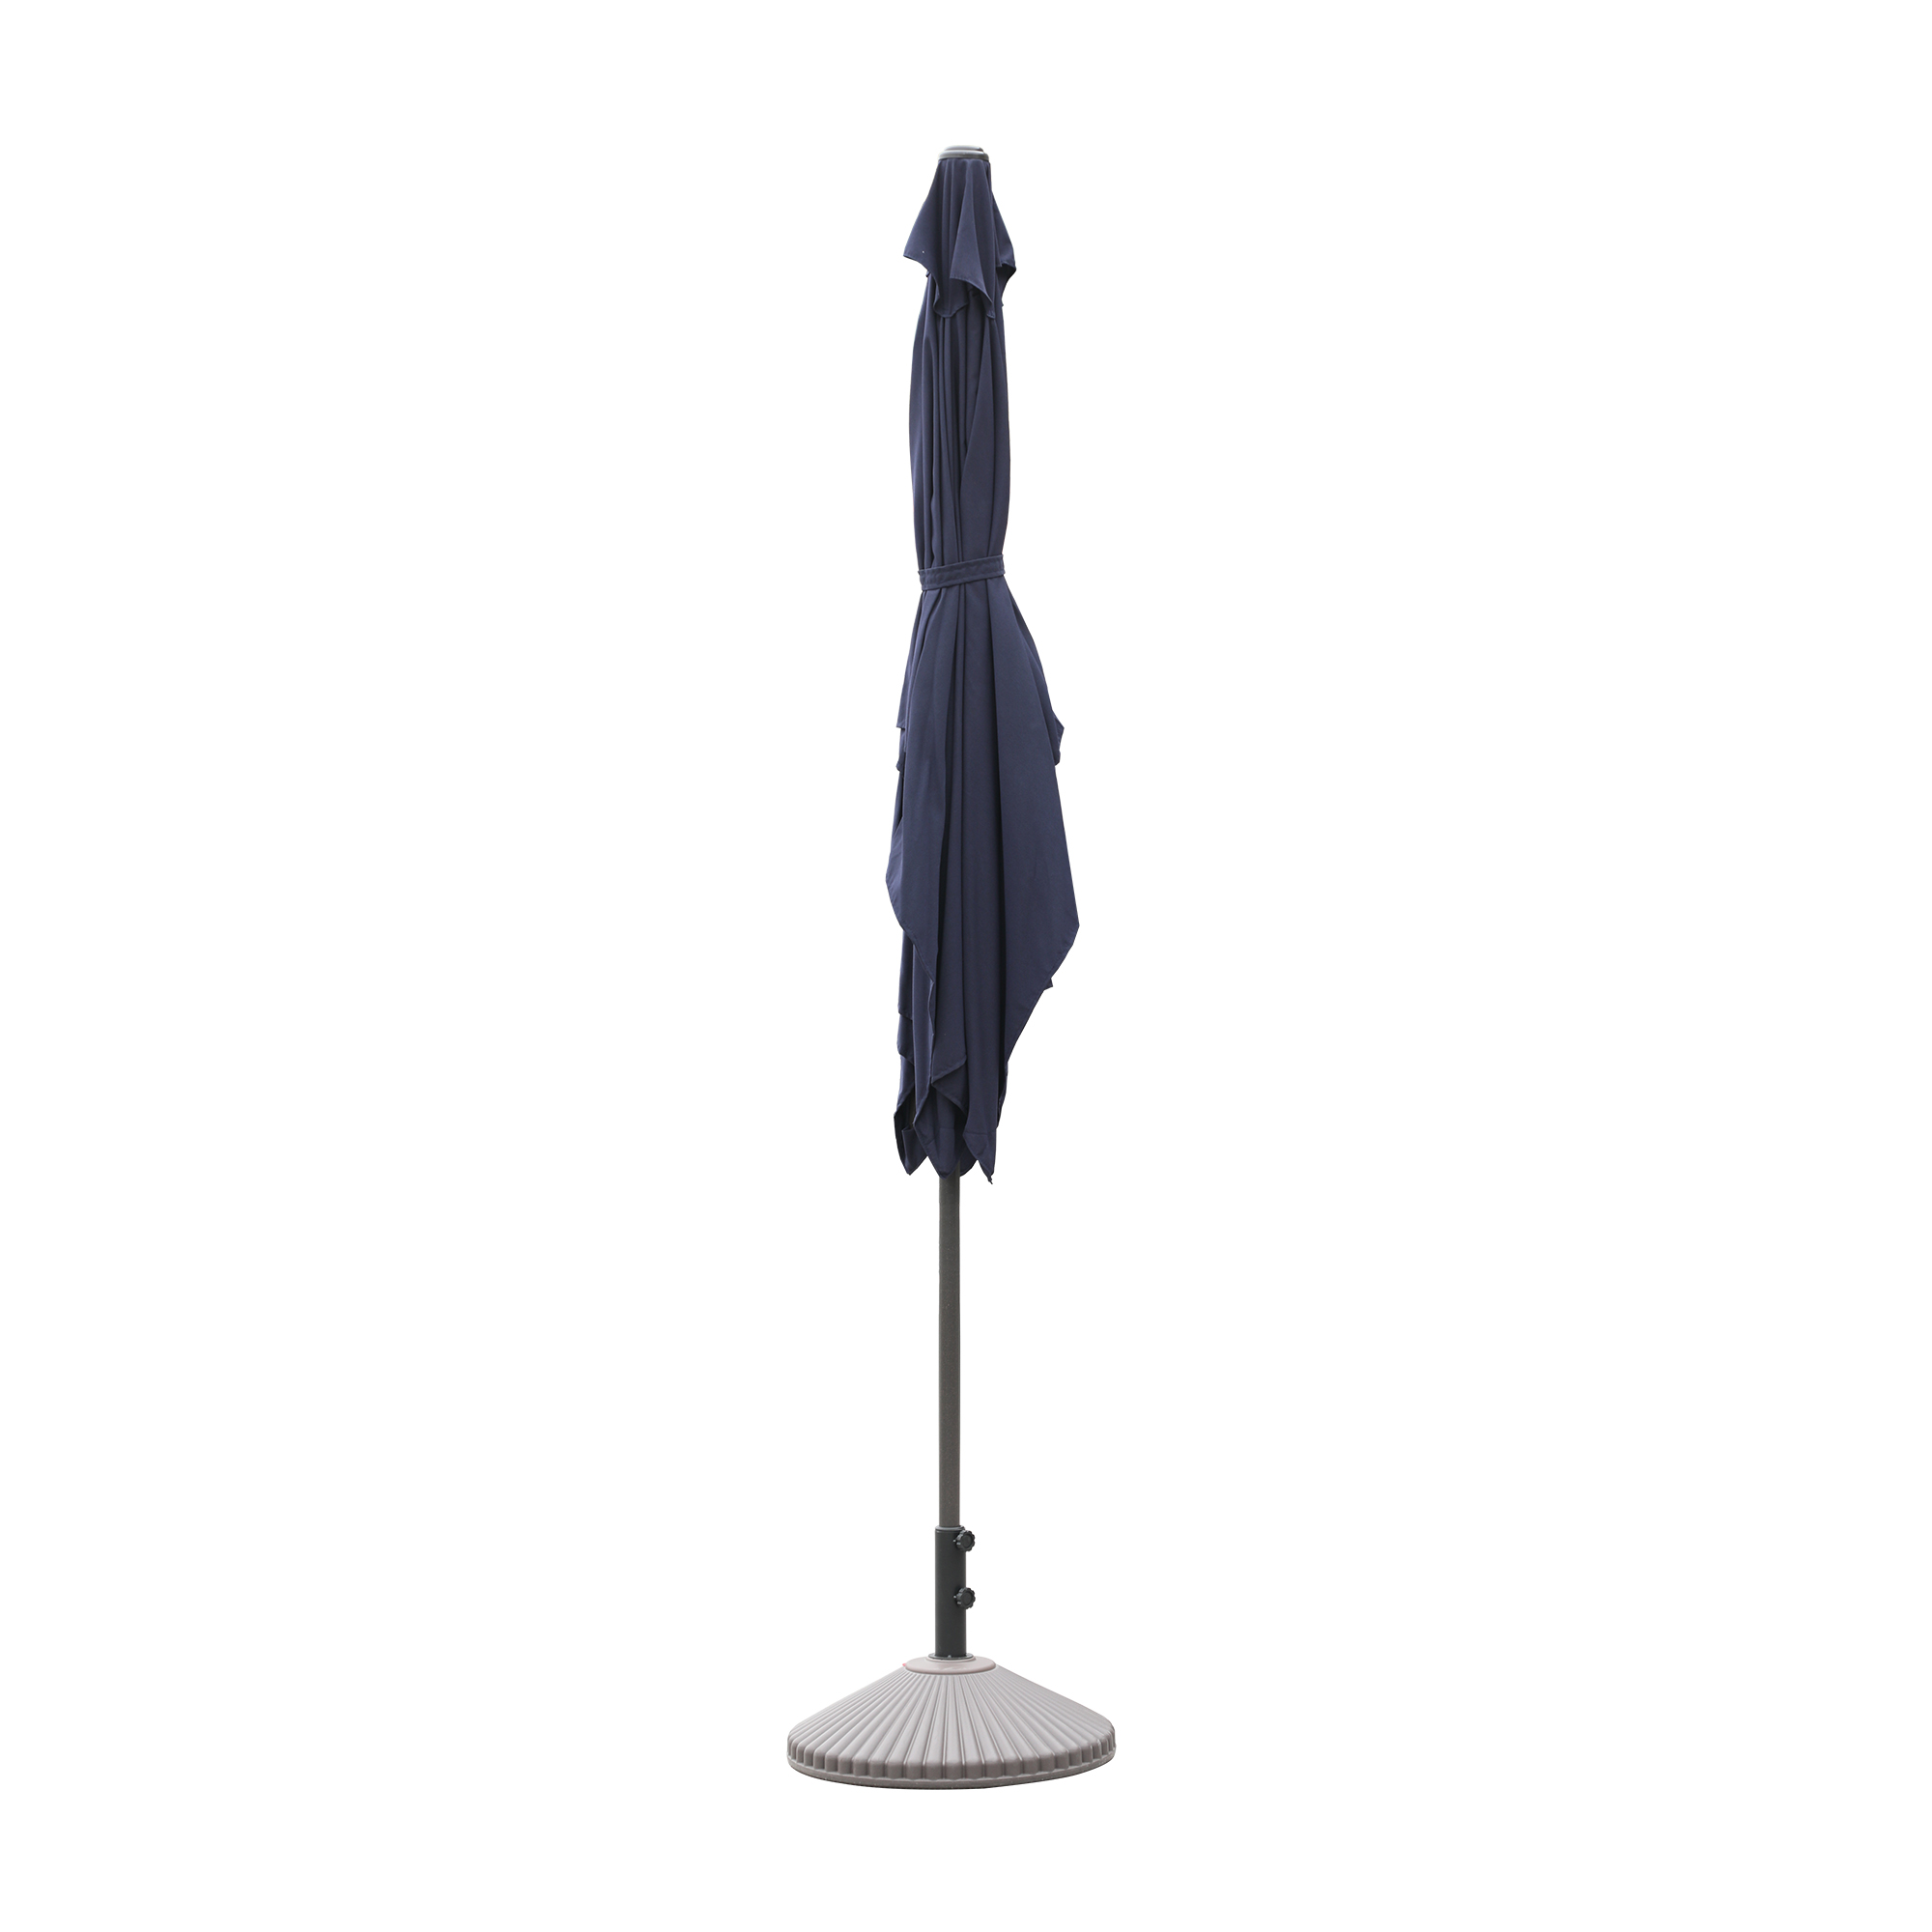 Mondawe 10 ft. Aluminum Pole Rectangular Patio Umbrella-Mondawe